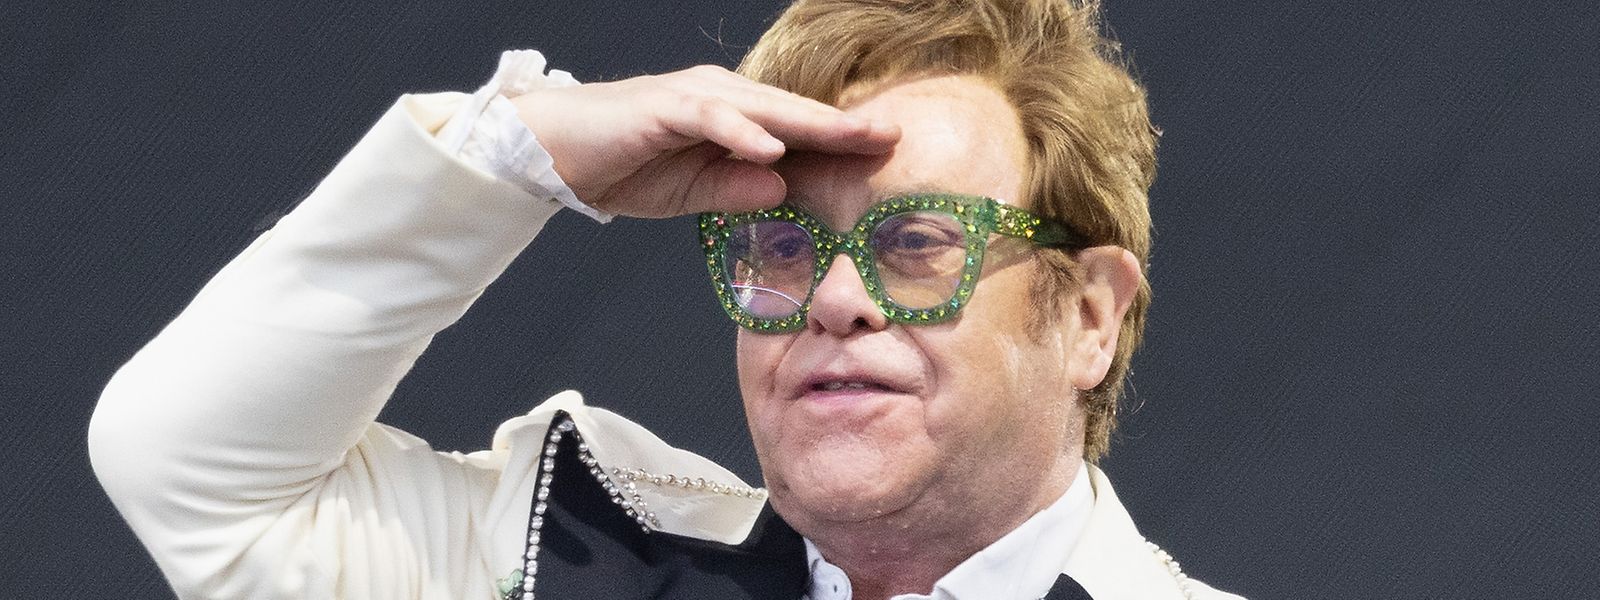 Elton John, Musiker, Komponist und Sänger, tritt live auf der Bühne des BST Hyde Park Festivals auf.